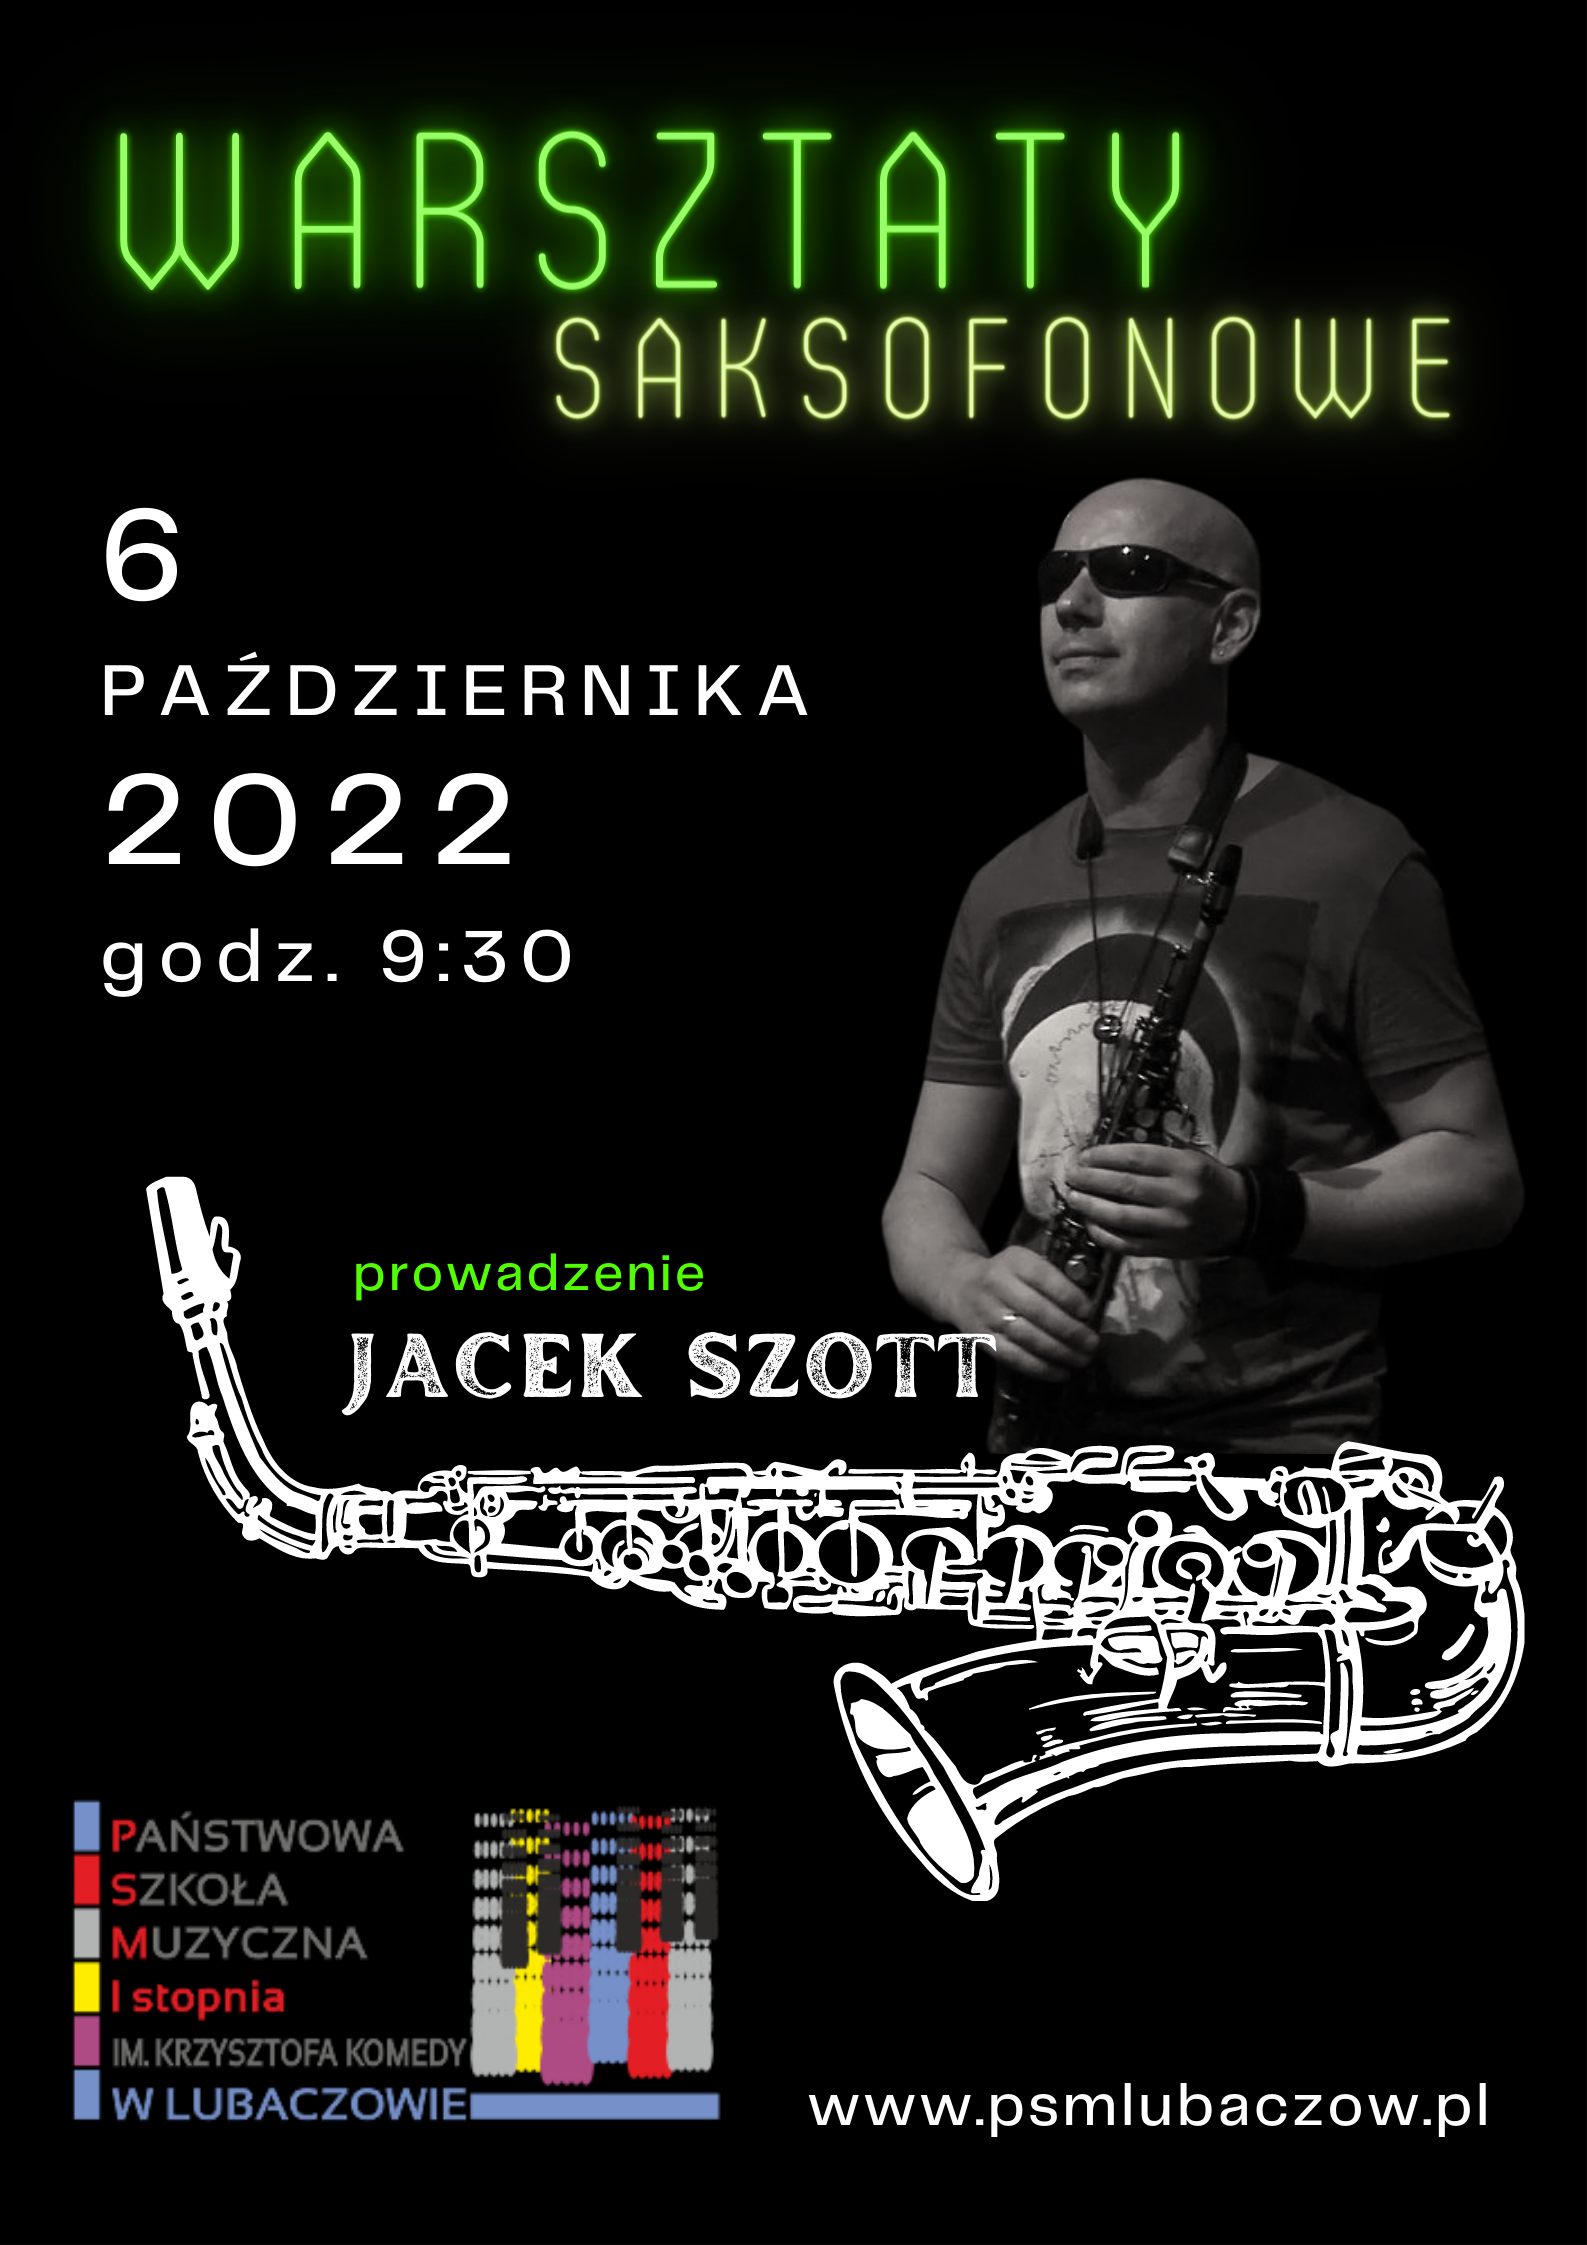 Plakat na czarnym tle ze zdjęciem saksofonisty Pana Jacka Szotta i informacją o warsztatach saksofonowych w dniu 6.10.2022 o godz. 9.30